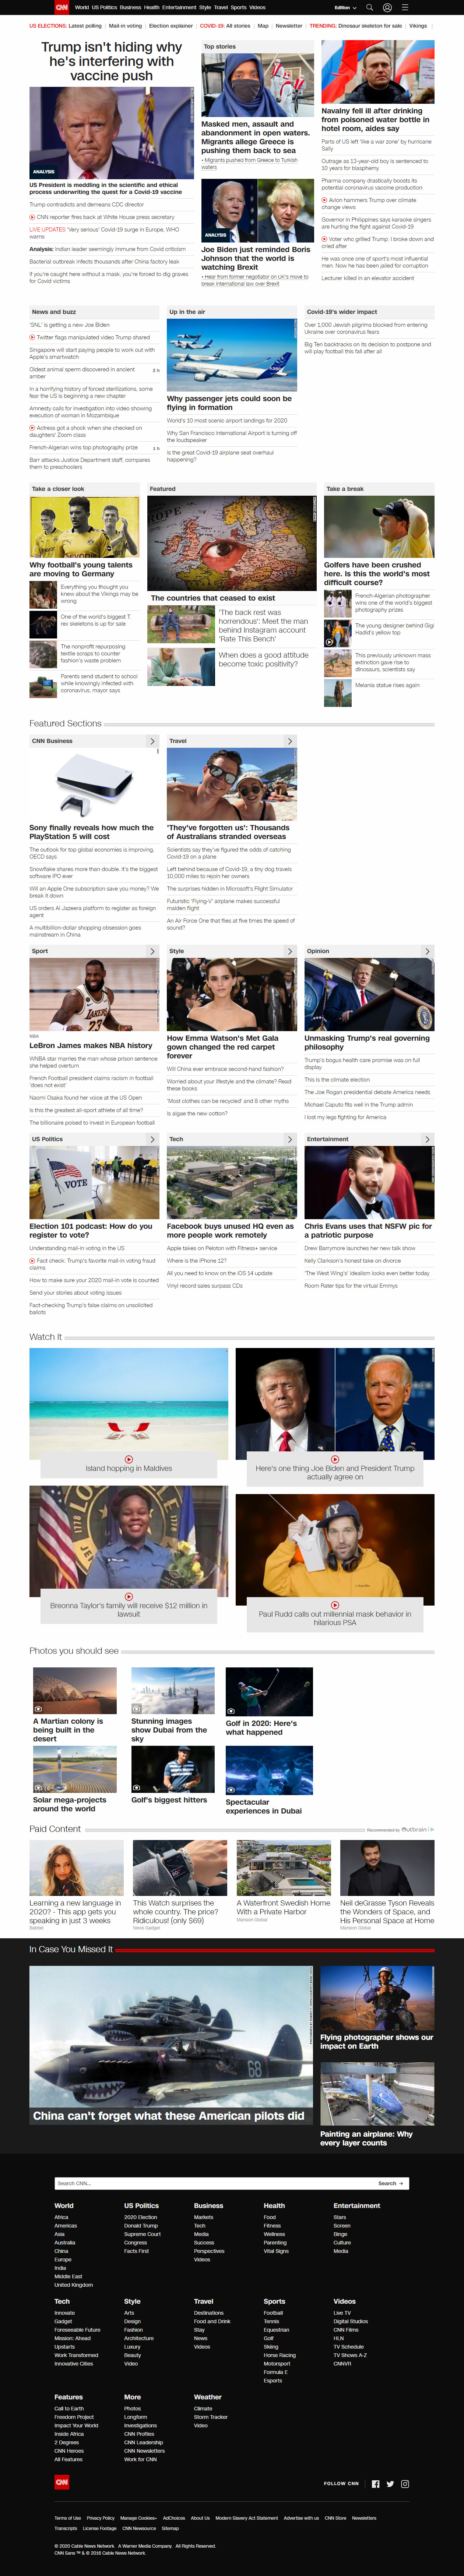 CNN.com website in 2020